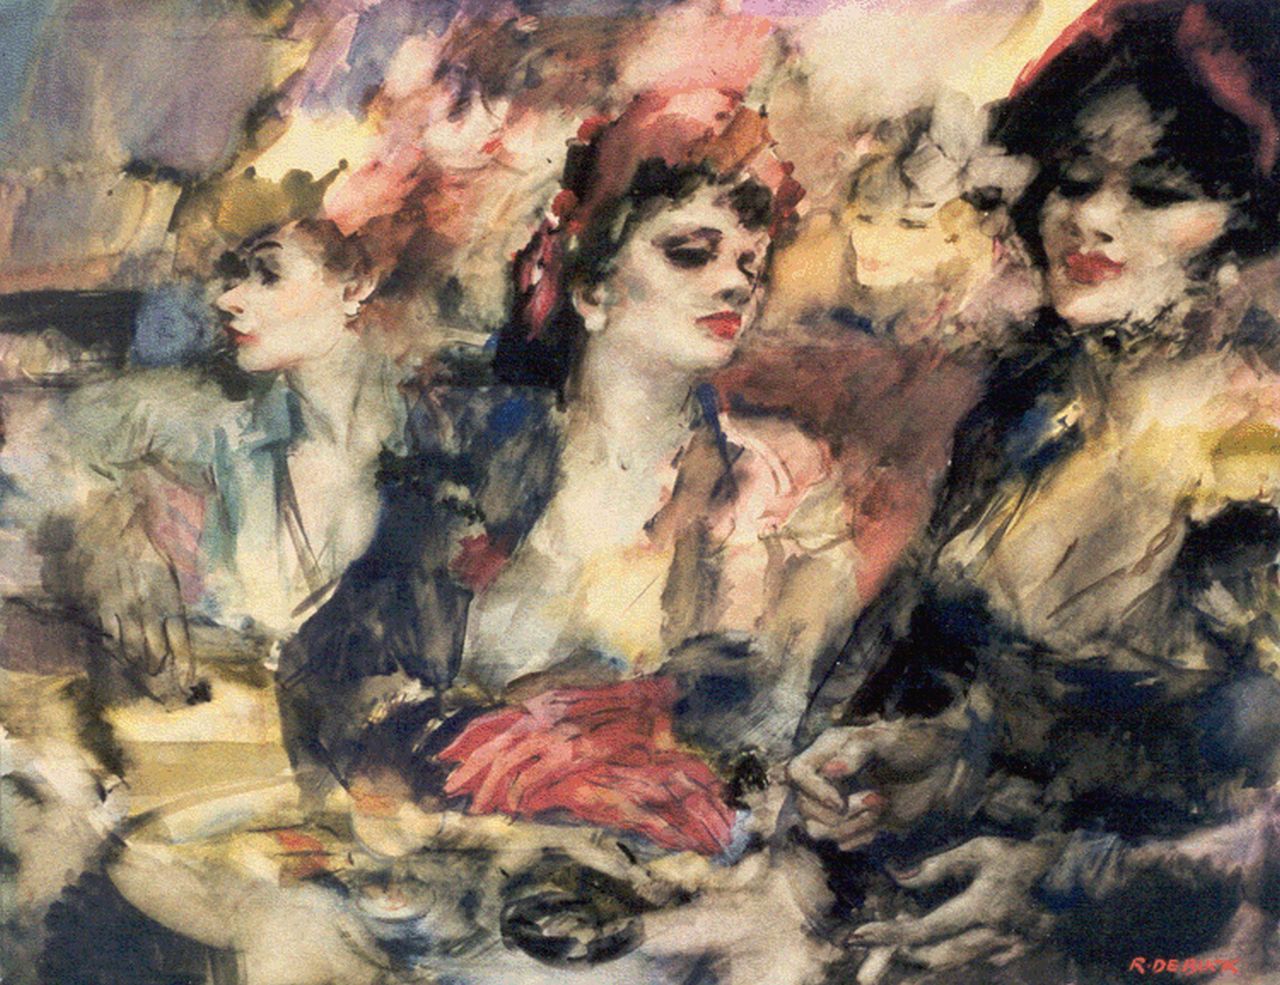 Buck R. de | Raphaël de Buck, Drie vrouwen, aquarel op papier 52,0 x 67,4 cm, gesigneerd rechtsonder